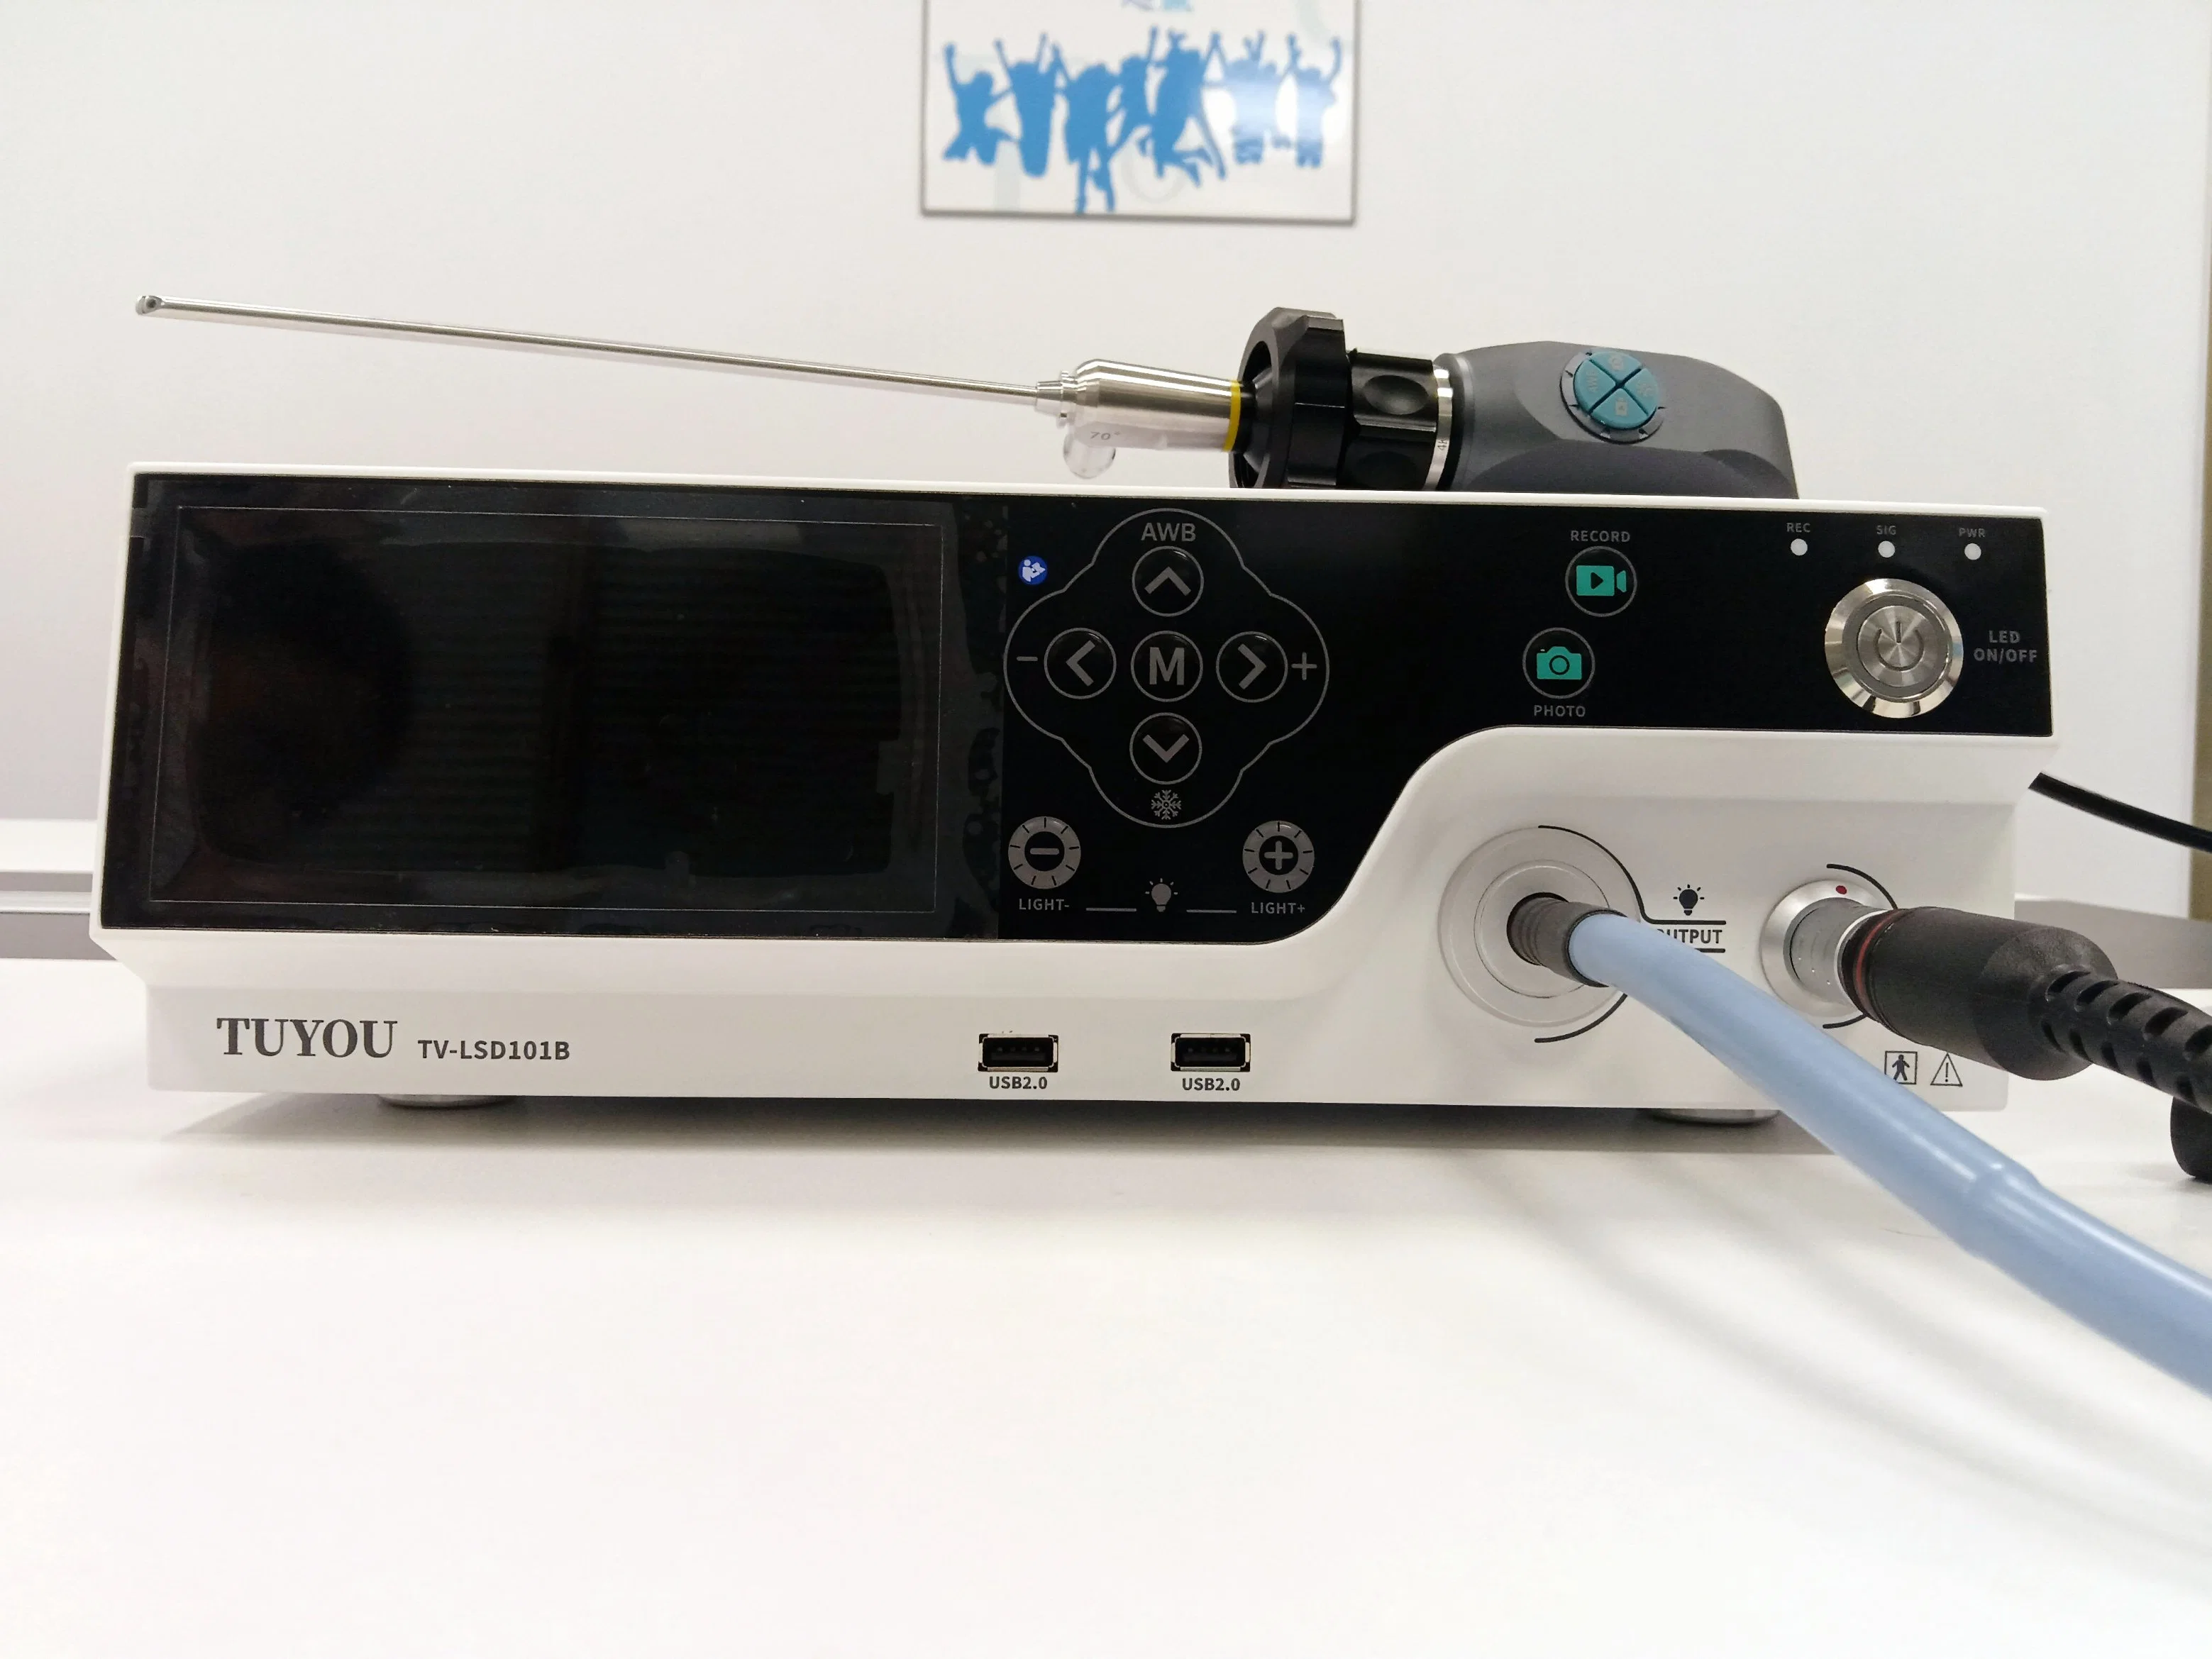 جهاز عرض عالي الوضوح بالكامل بحجم 6 بوصات مزود بمعالج USB Record Medical Camera مع مصدر ضوء LED لنظام منظار الداخلي الصلب